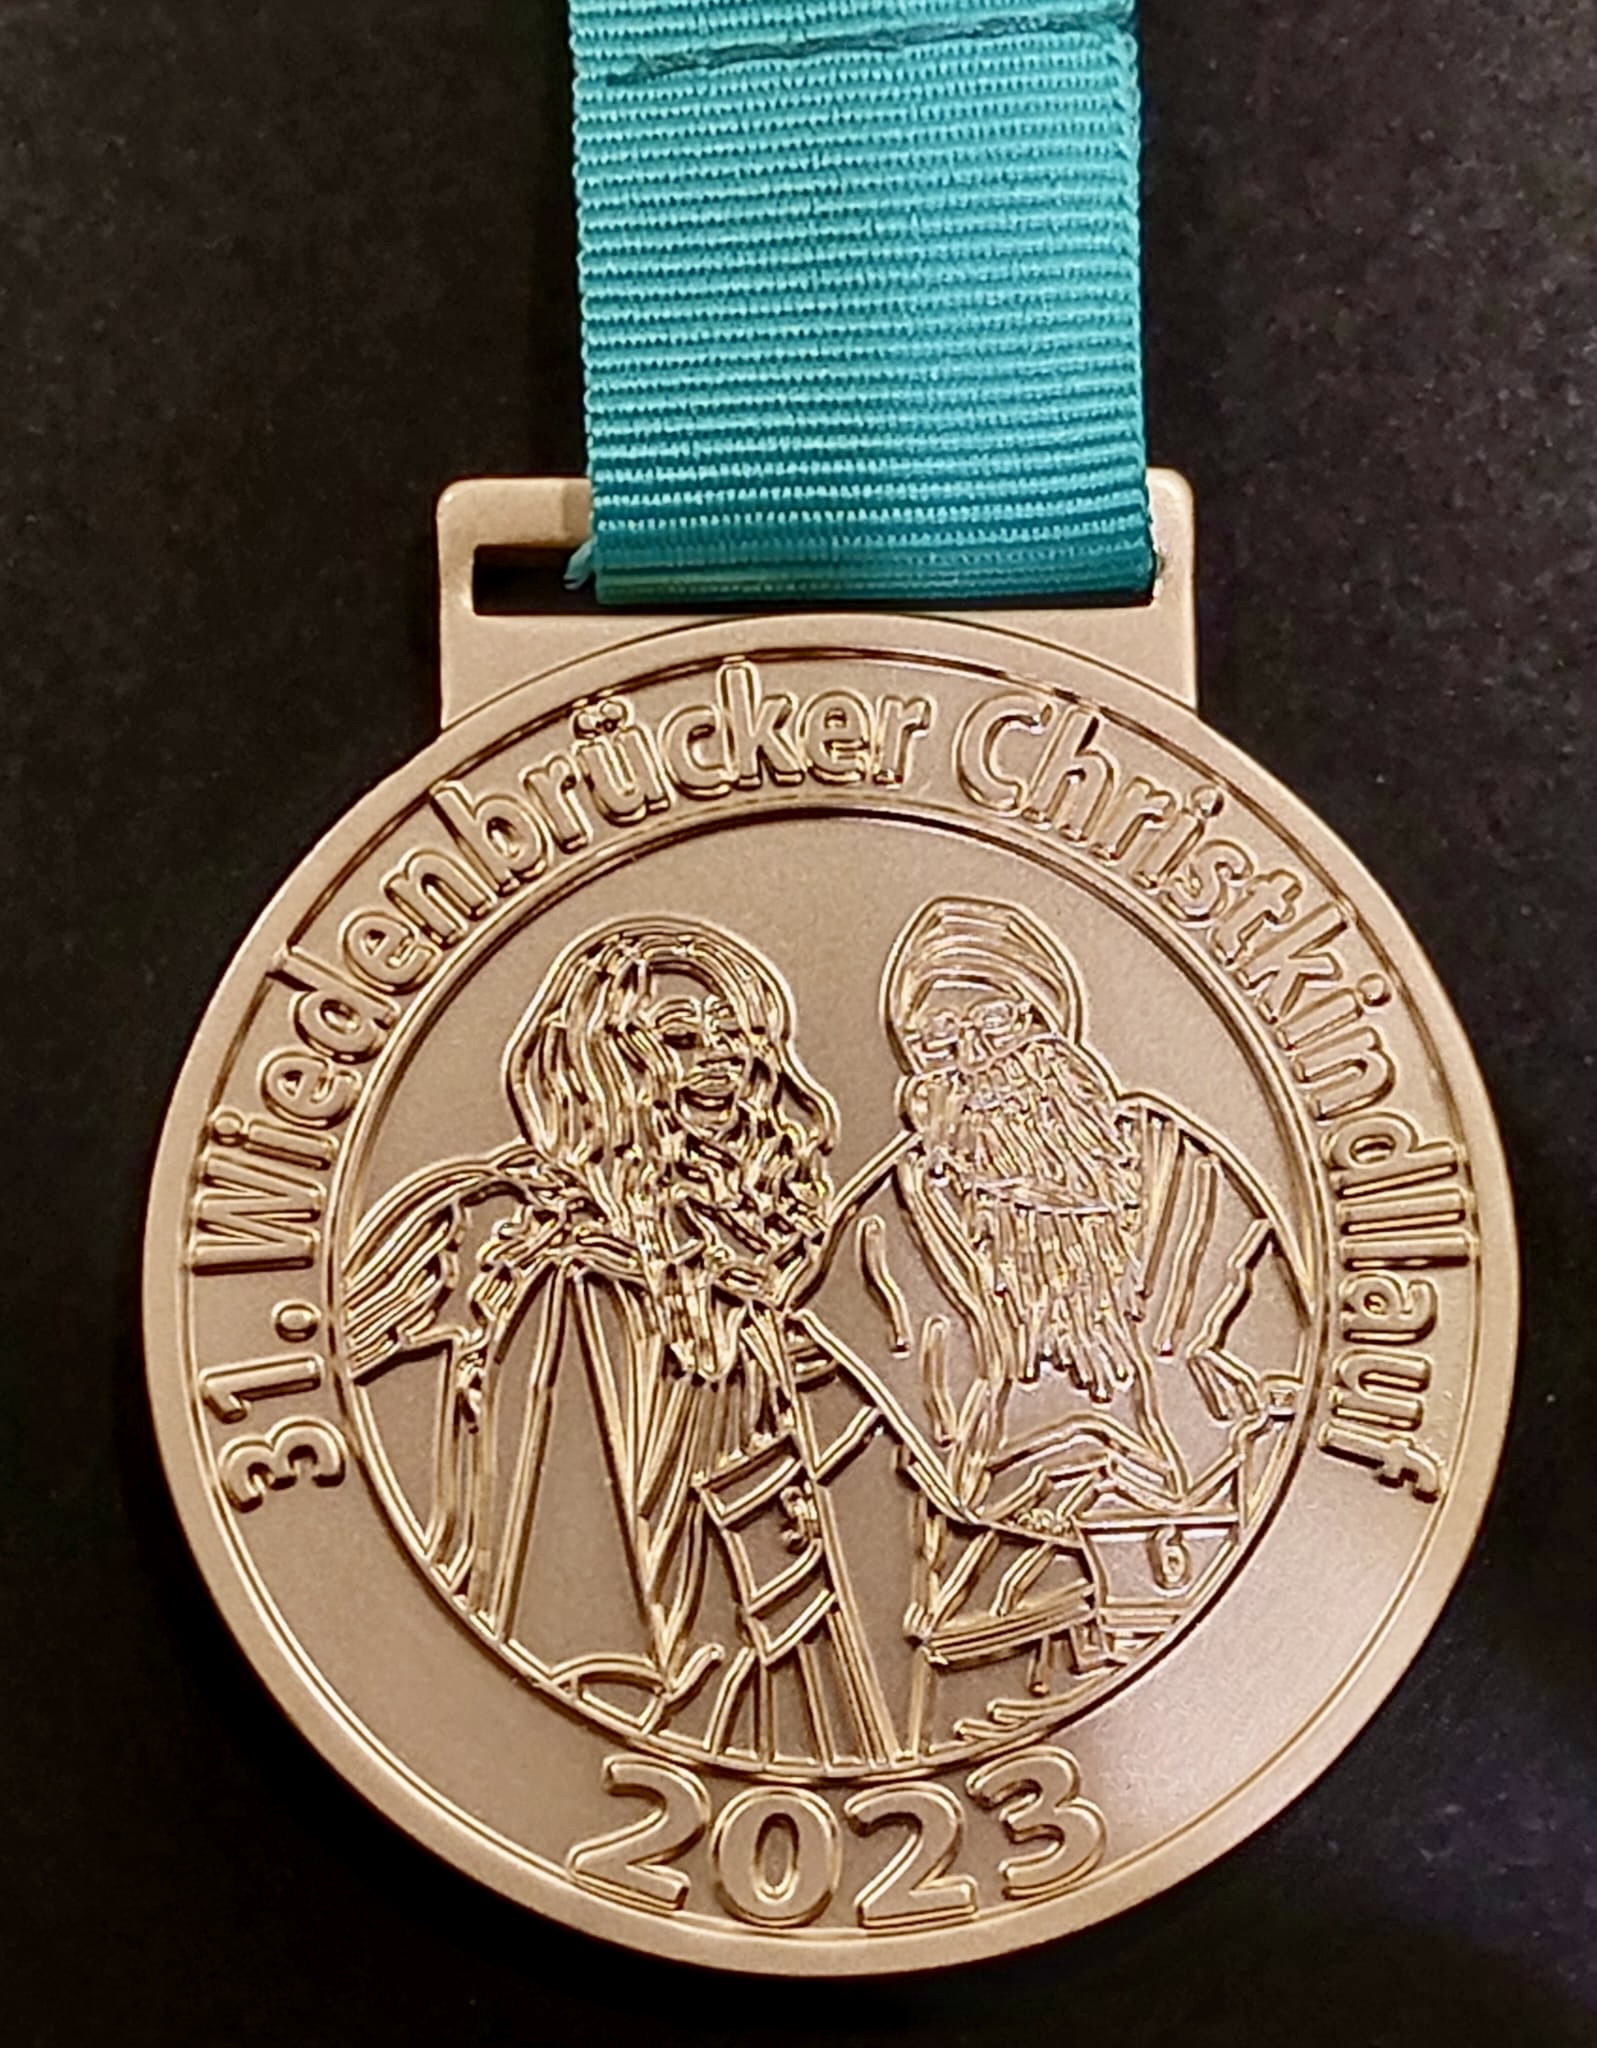 Die Medaille mit Christkind und Nikolaus;<br />
Bild: Ralf Lohmann